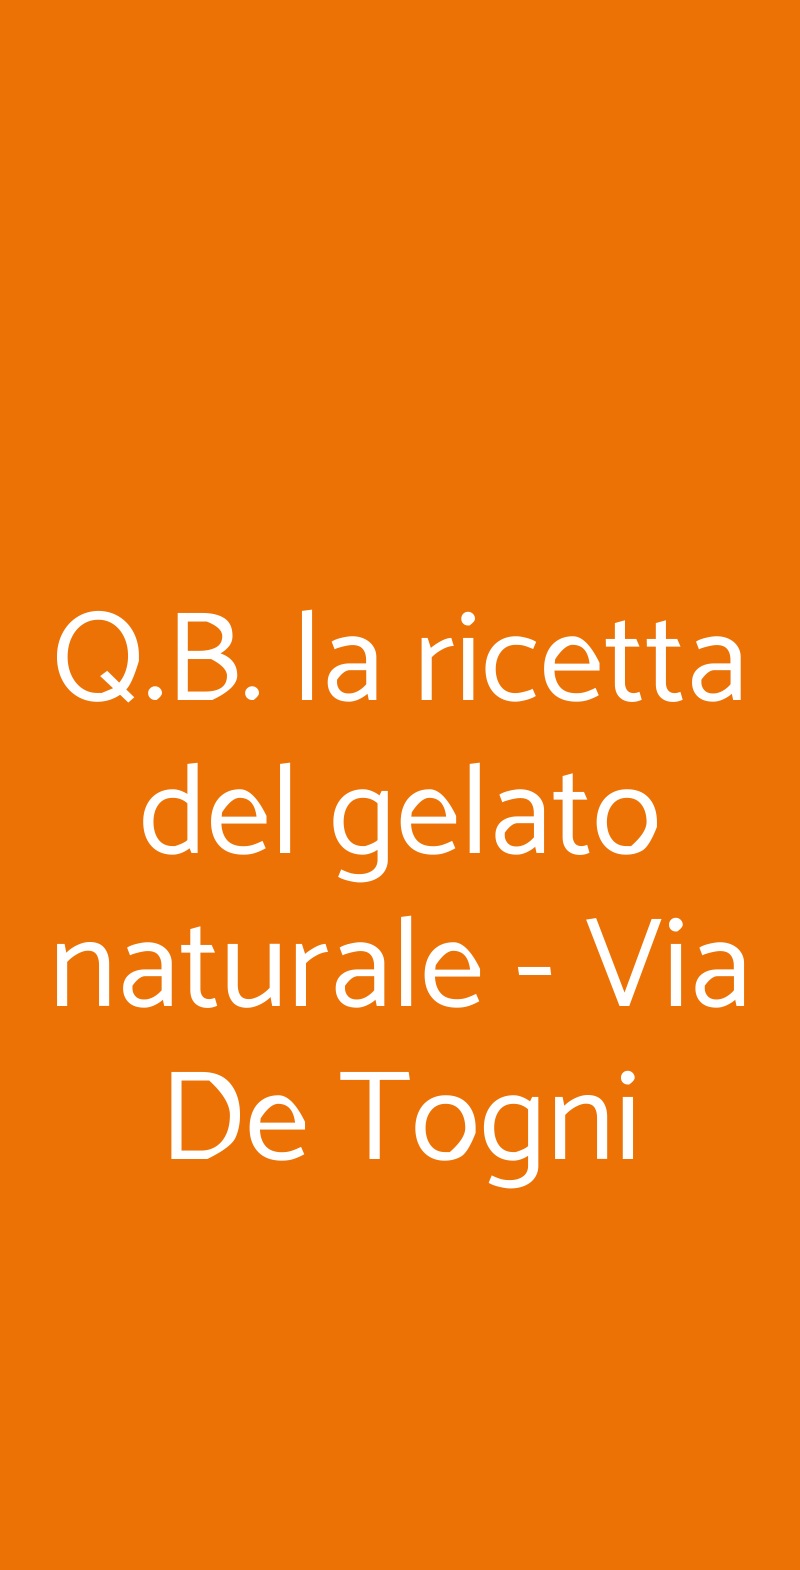 Q.B. la ricetta del gelato naturale - Via De Togni Milano menù 1 pagina